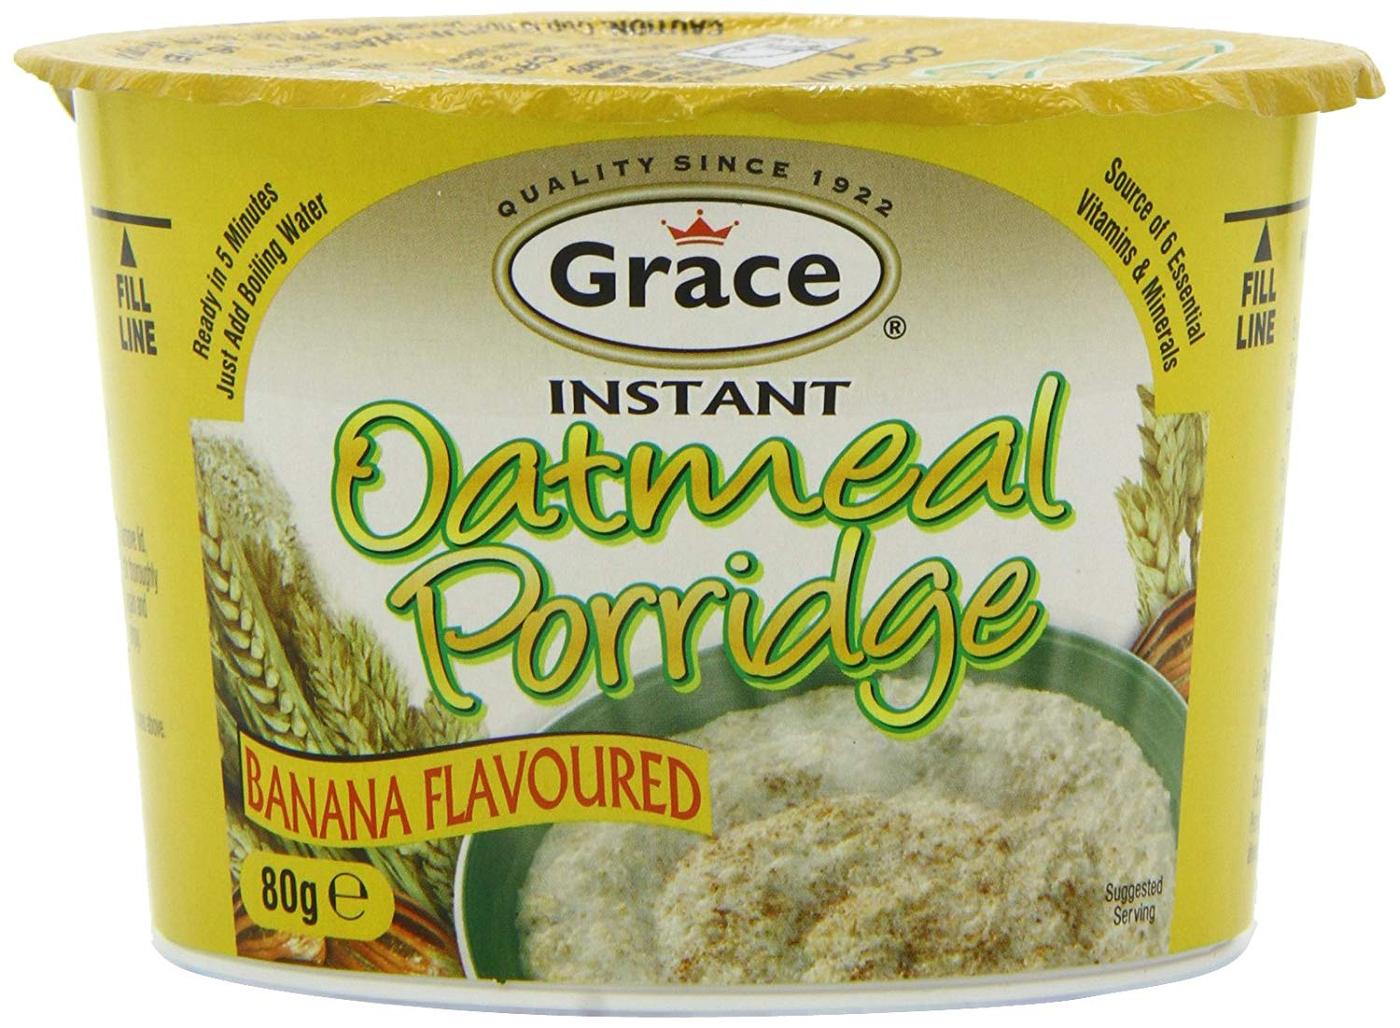 Oatmeal/Banana Porridge 60g